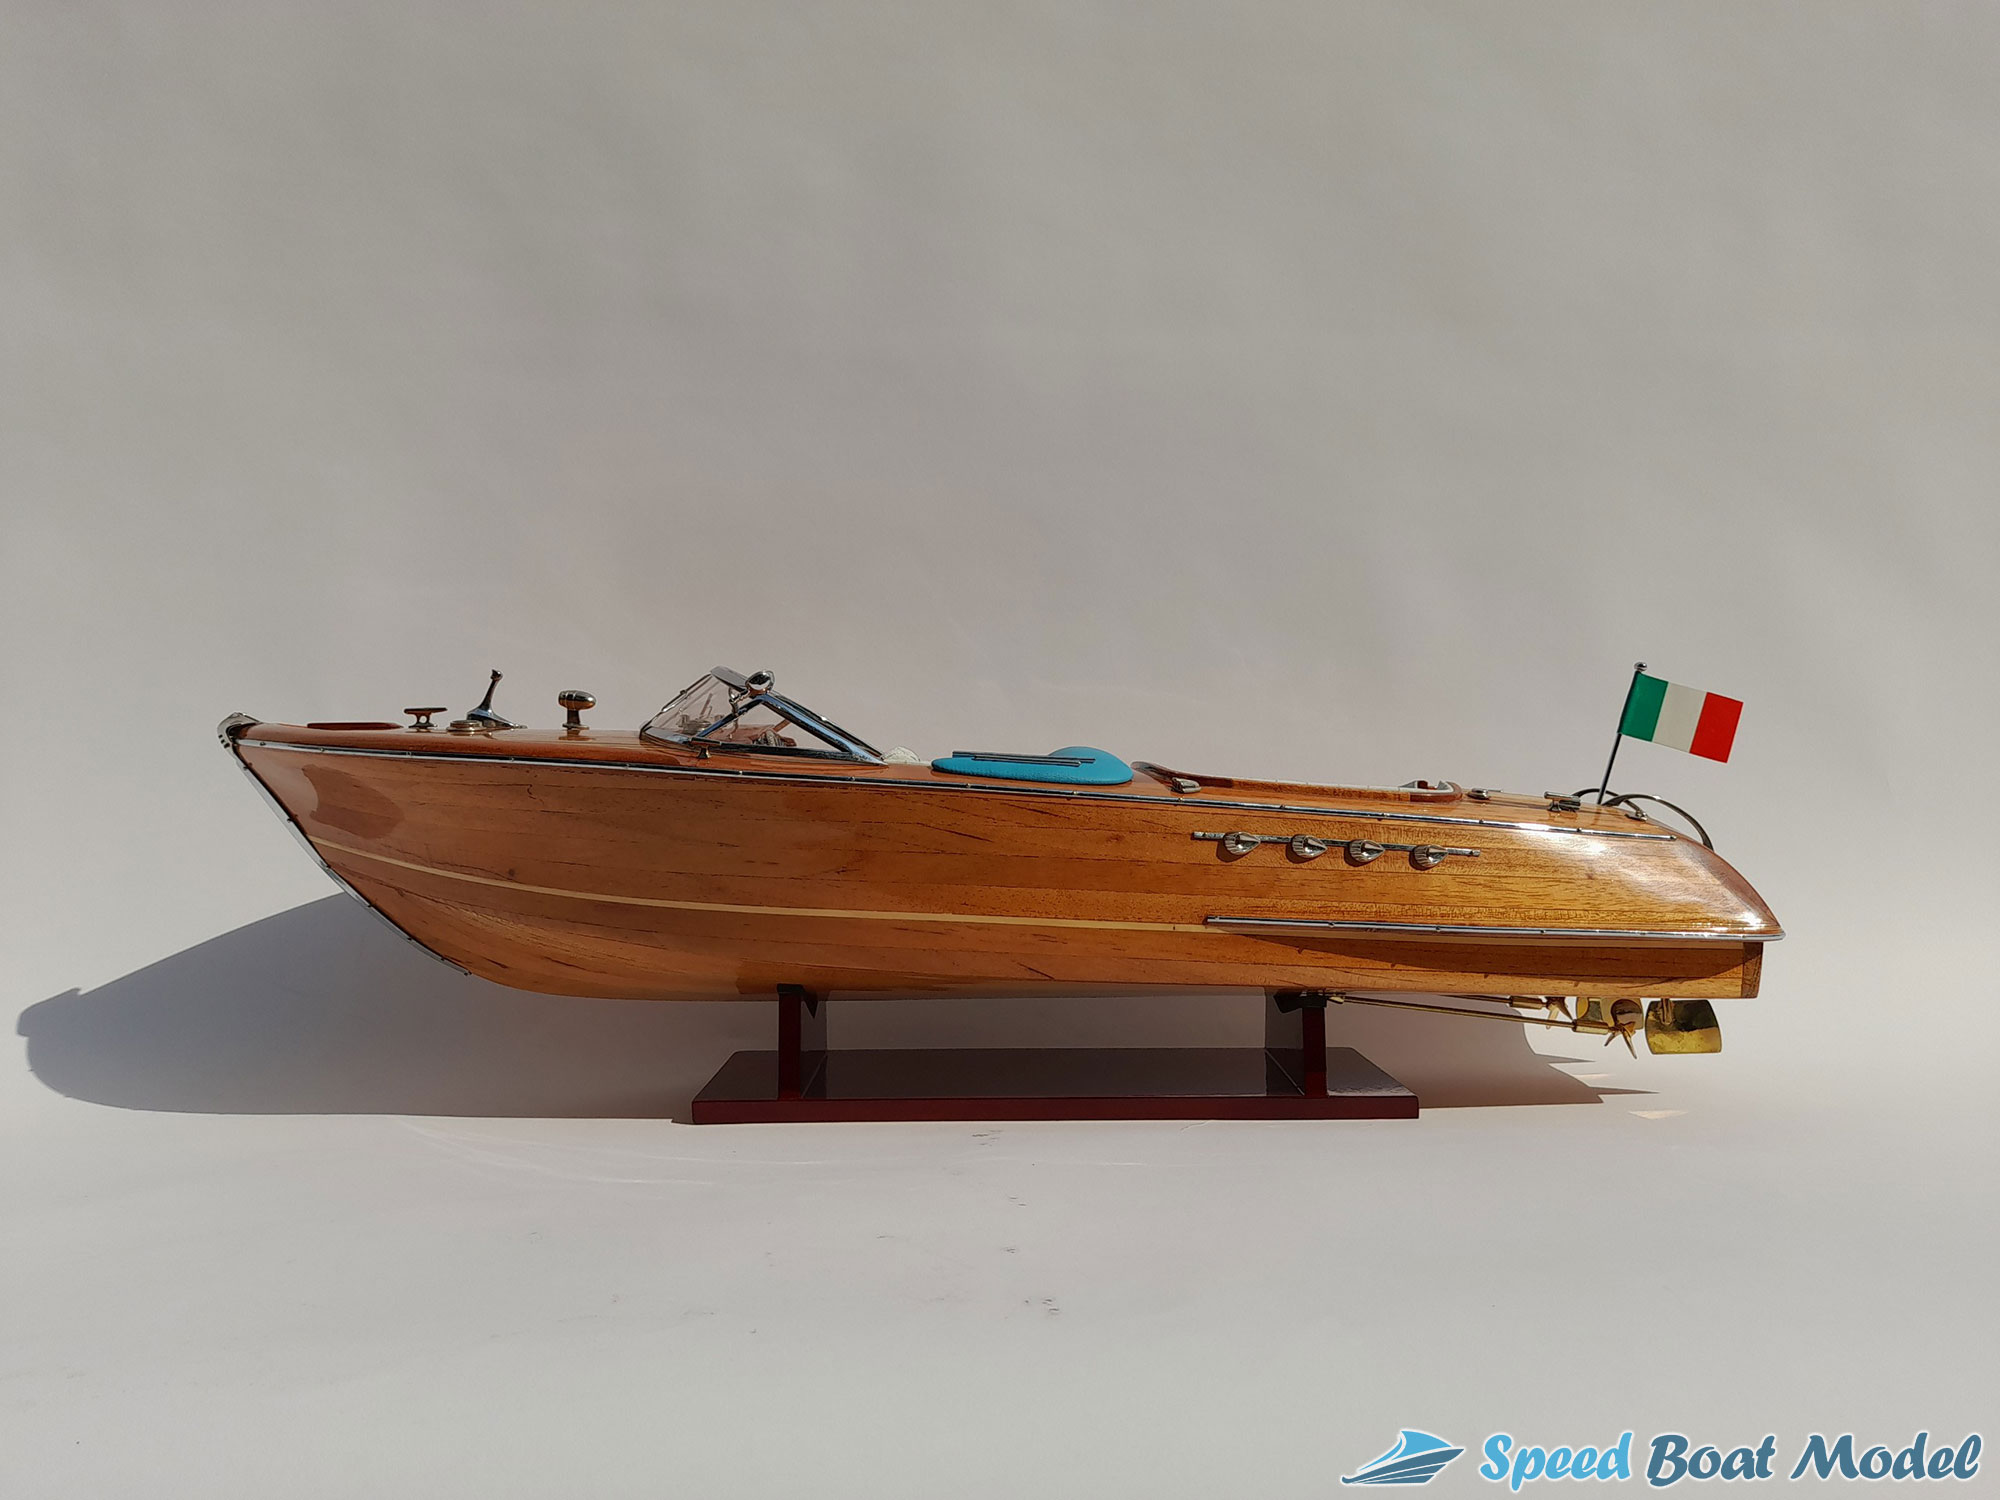 Riva Aquarama Wood Finished Classic Speed Boat